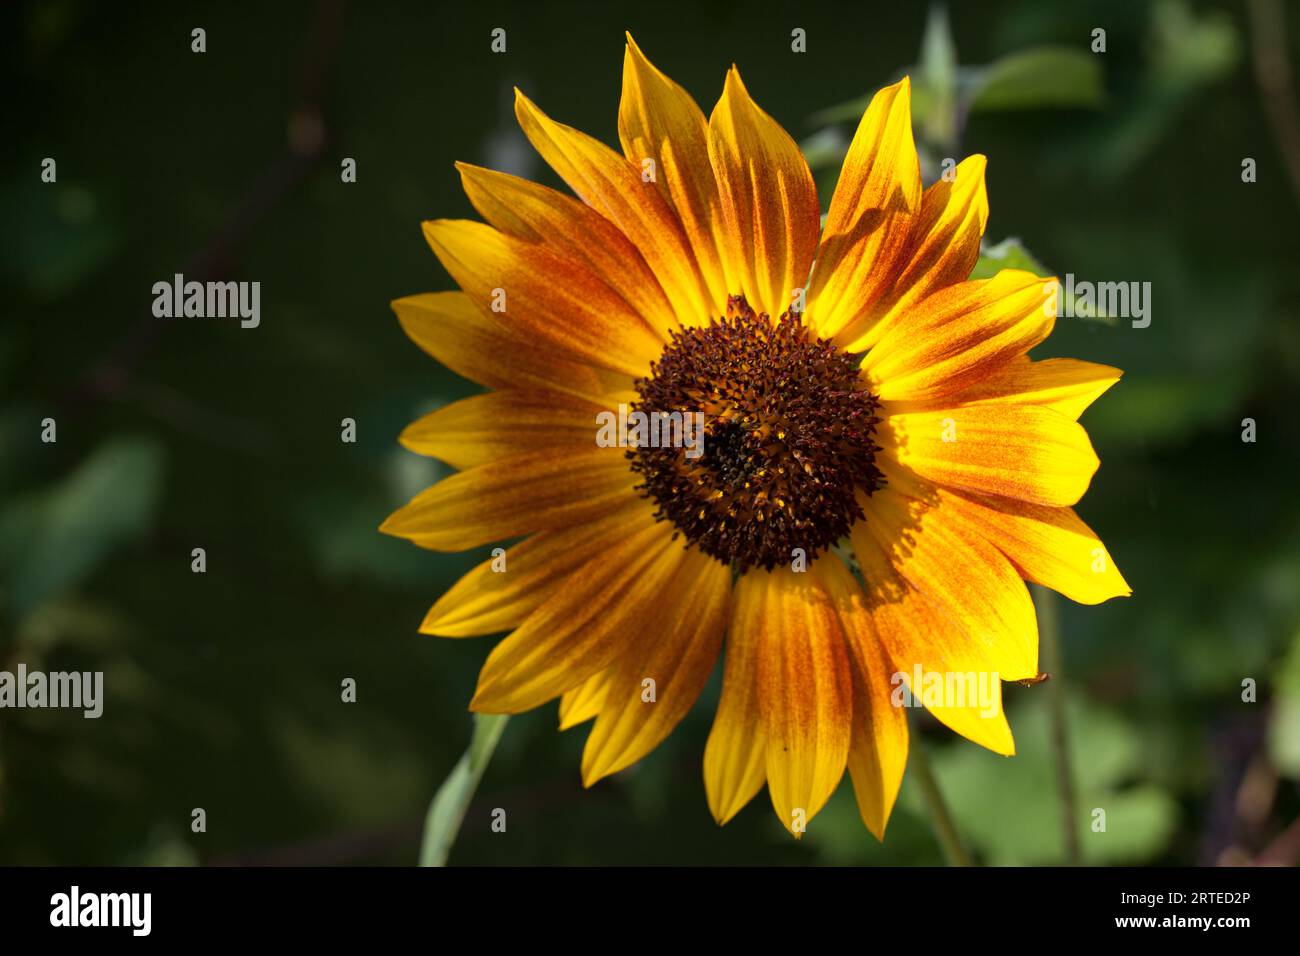 Kleiner, gelber und oranger Sonnenblumenkopf, der im grünen englischen Garten wächst. Stockfoto